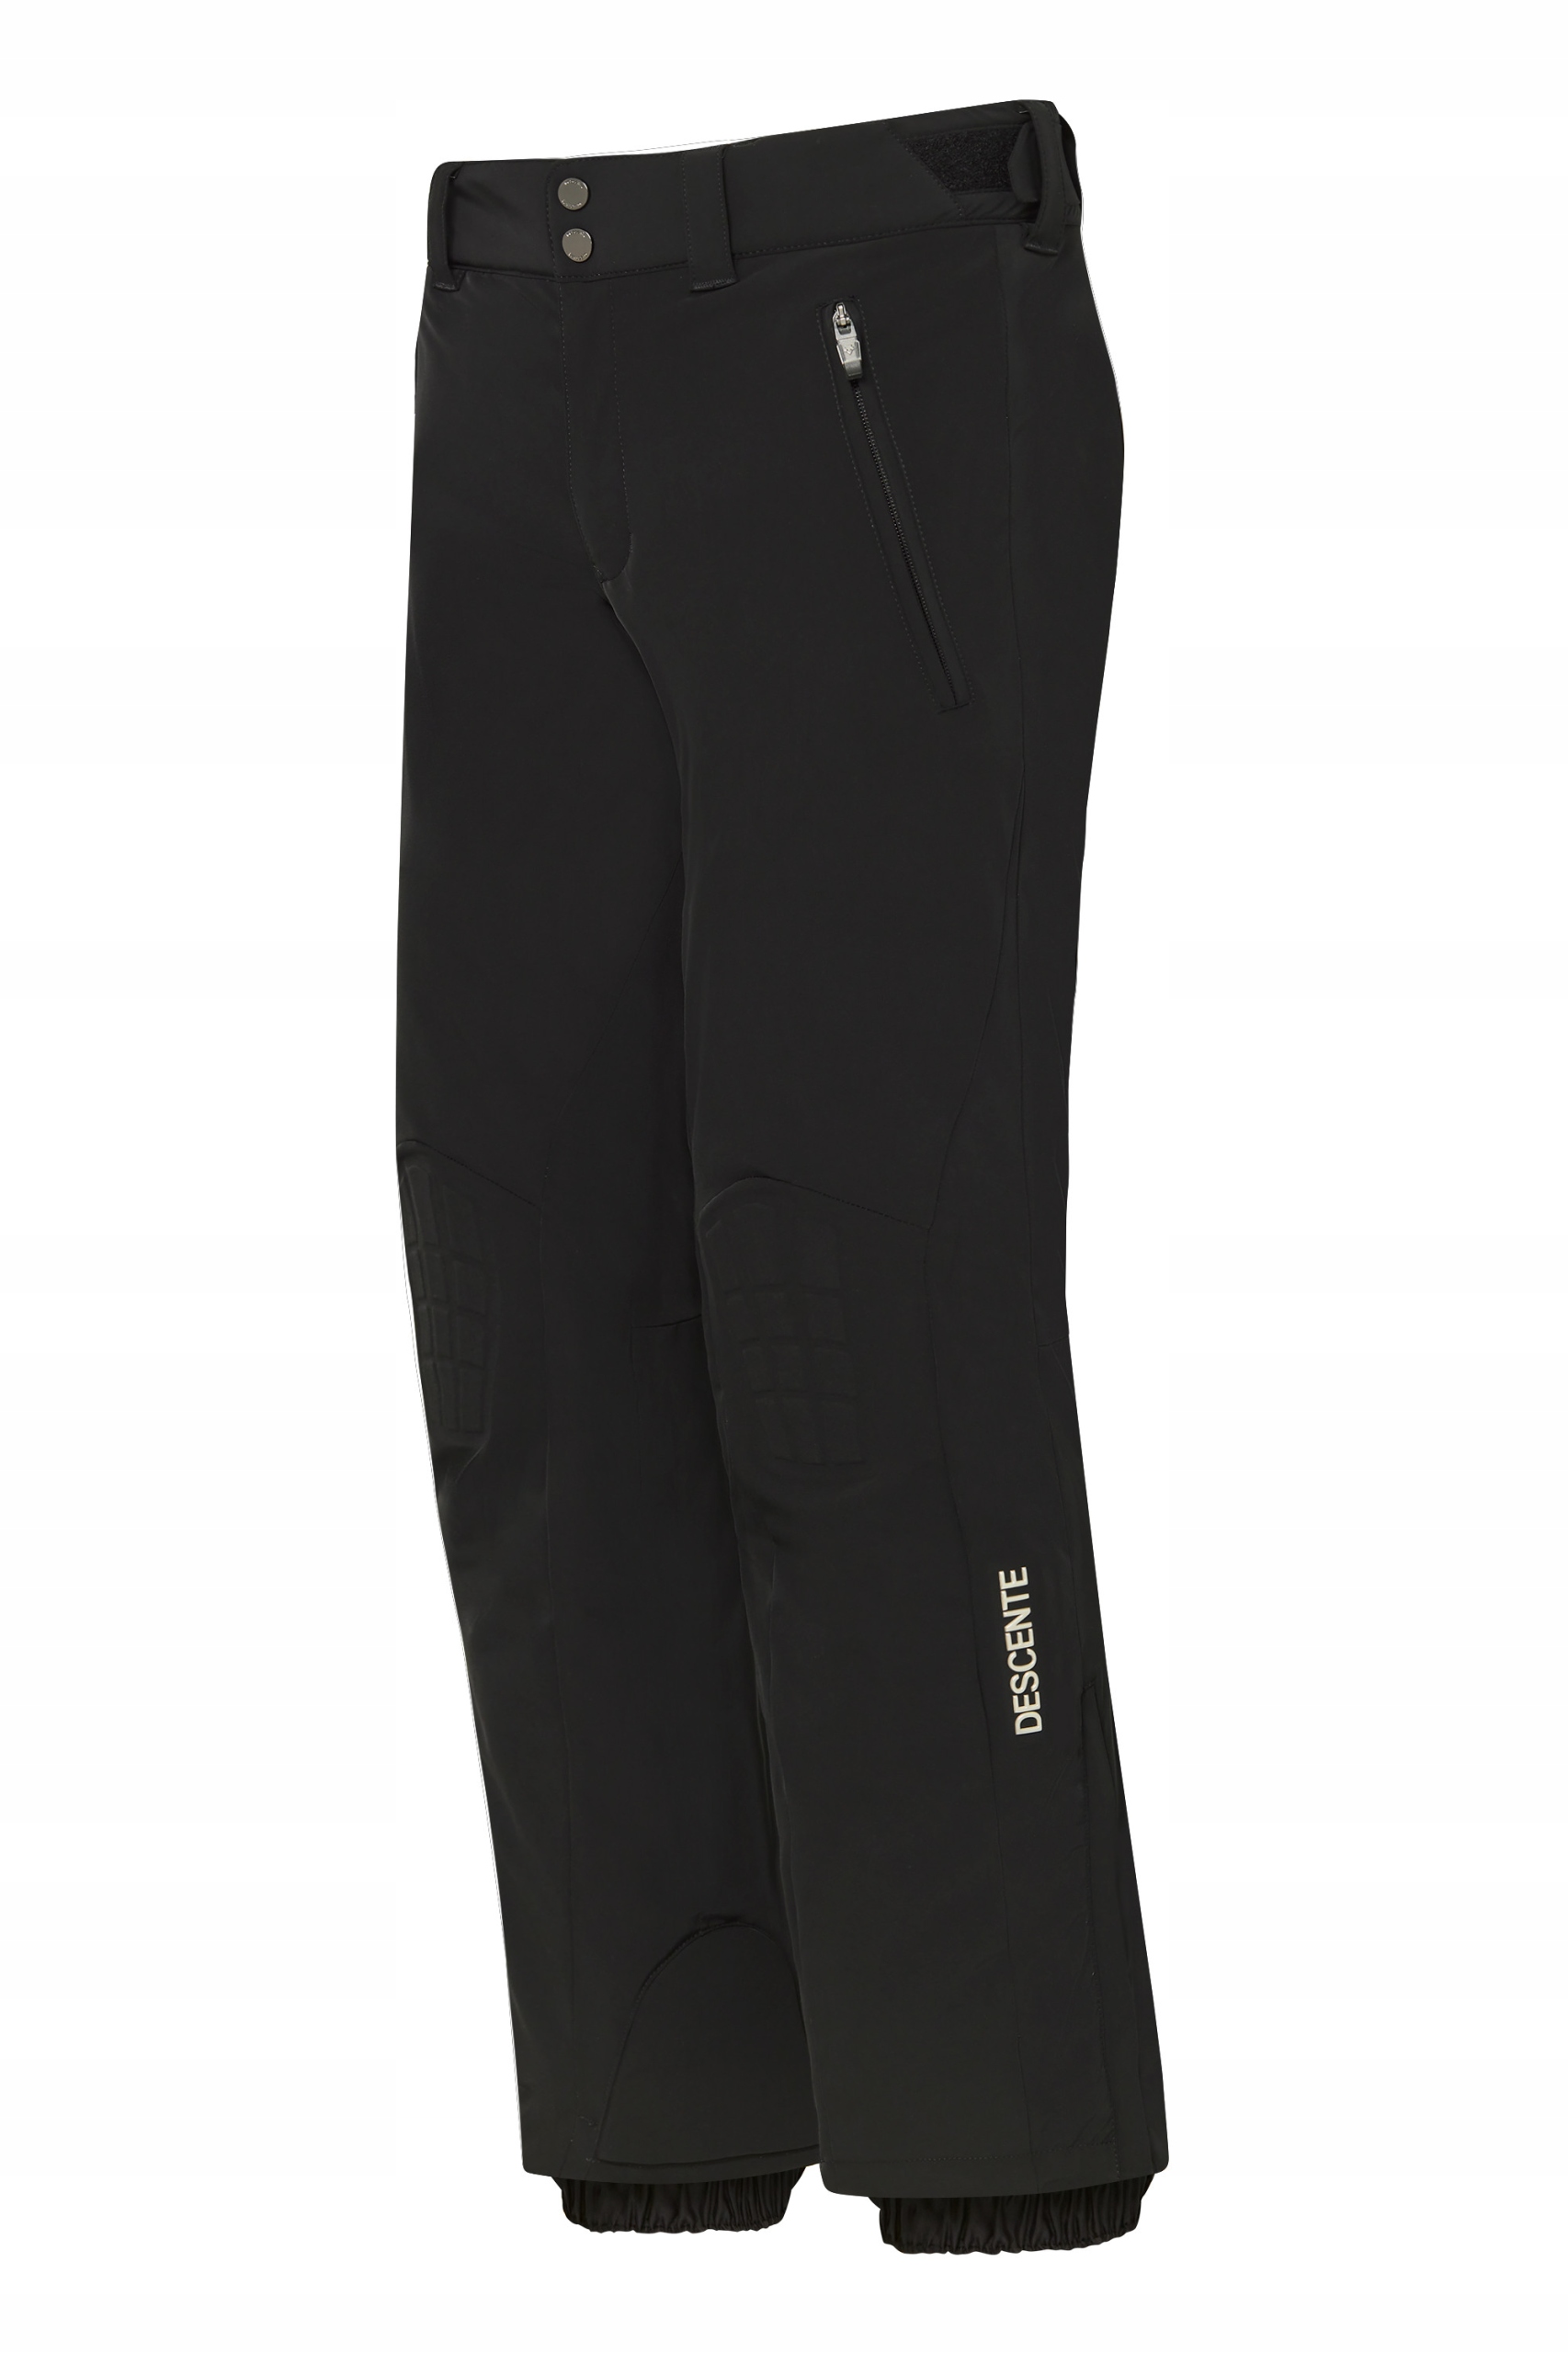 Descente, Insulated Lamborghini spodnie narciarskie mężczyźni